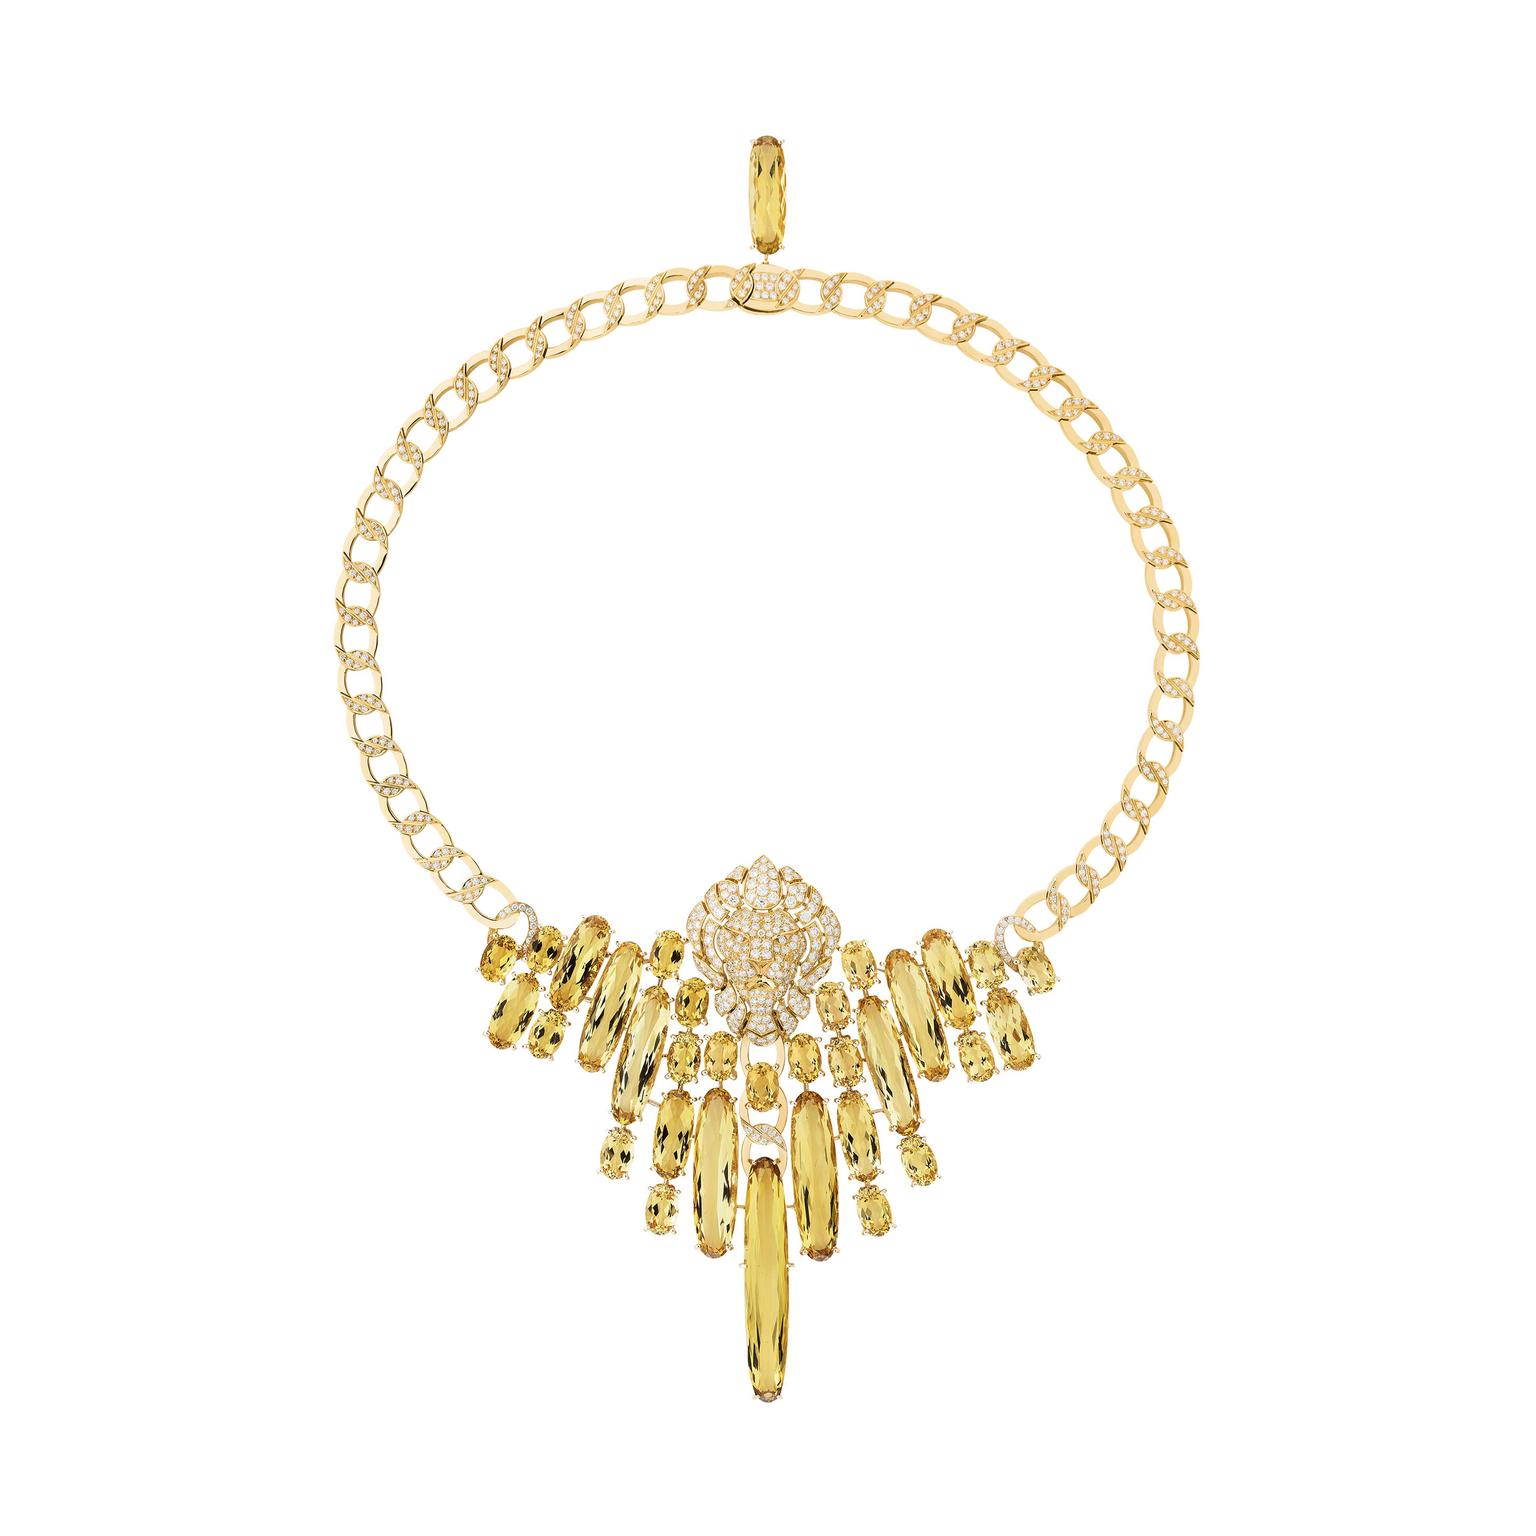 Chanel L'Esprit du Lion Dazzling lion necklace